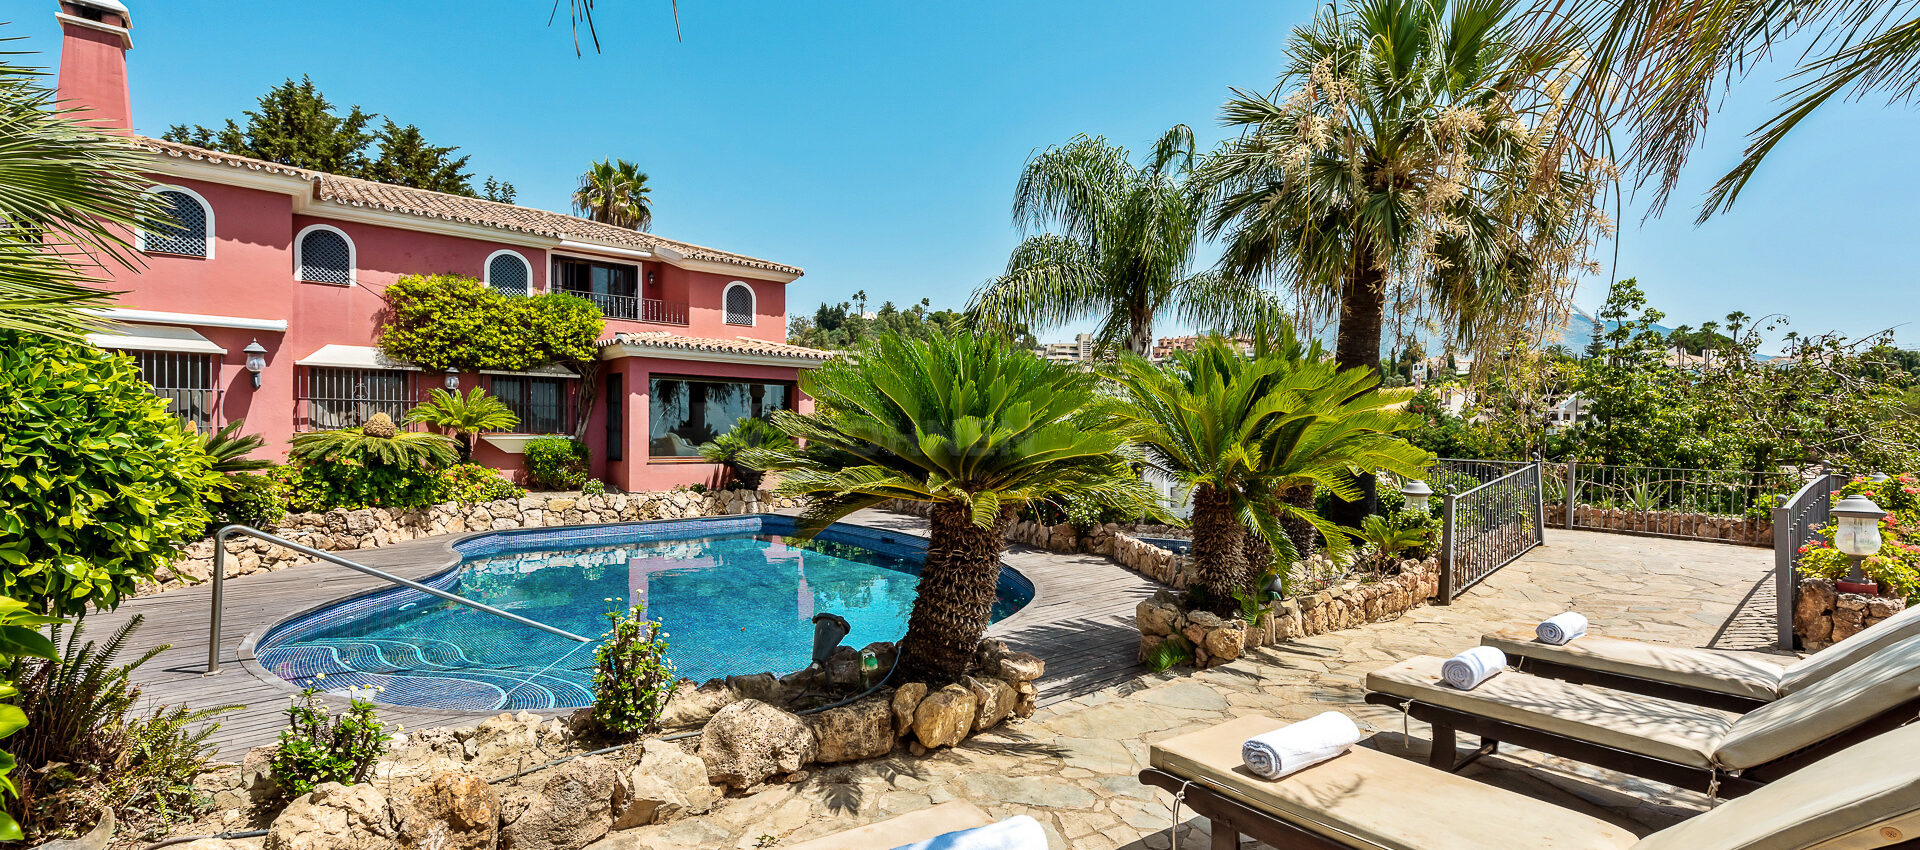 Schöne Villa in der Nähe der renommiertesten Golfplätze in Marbella